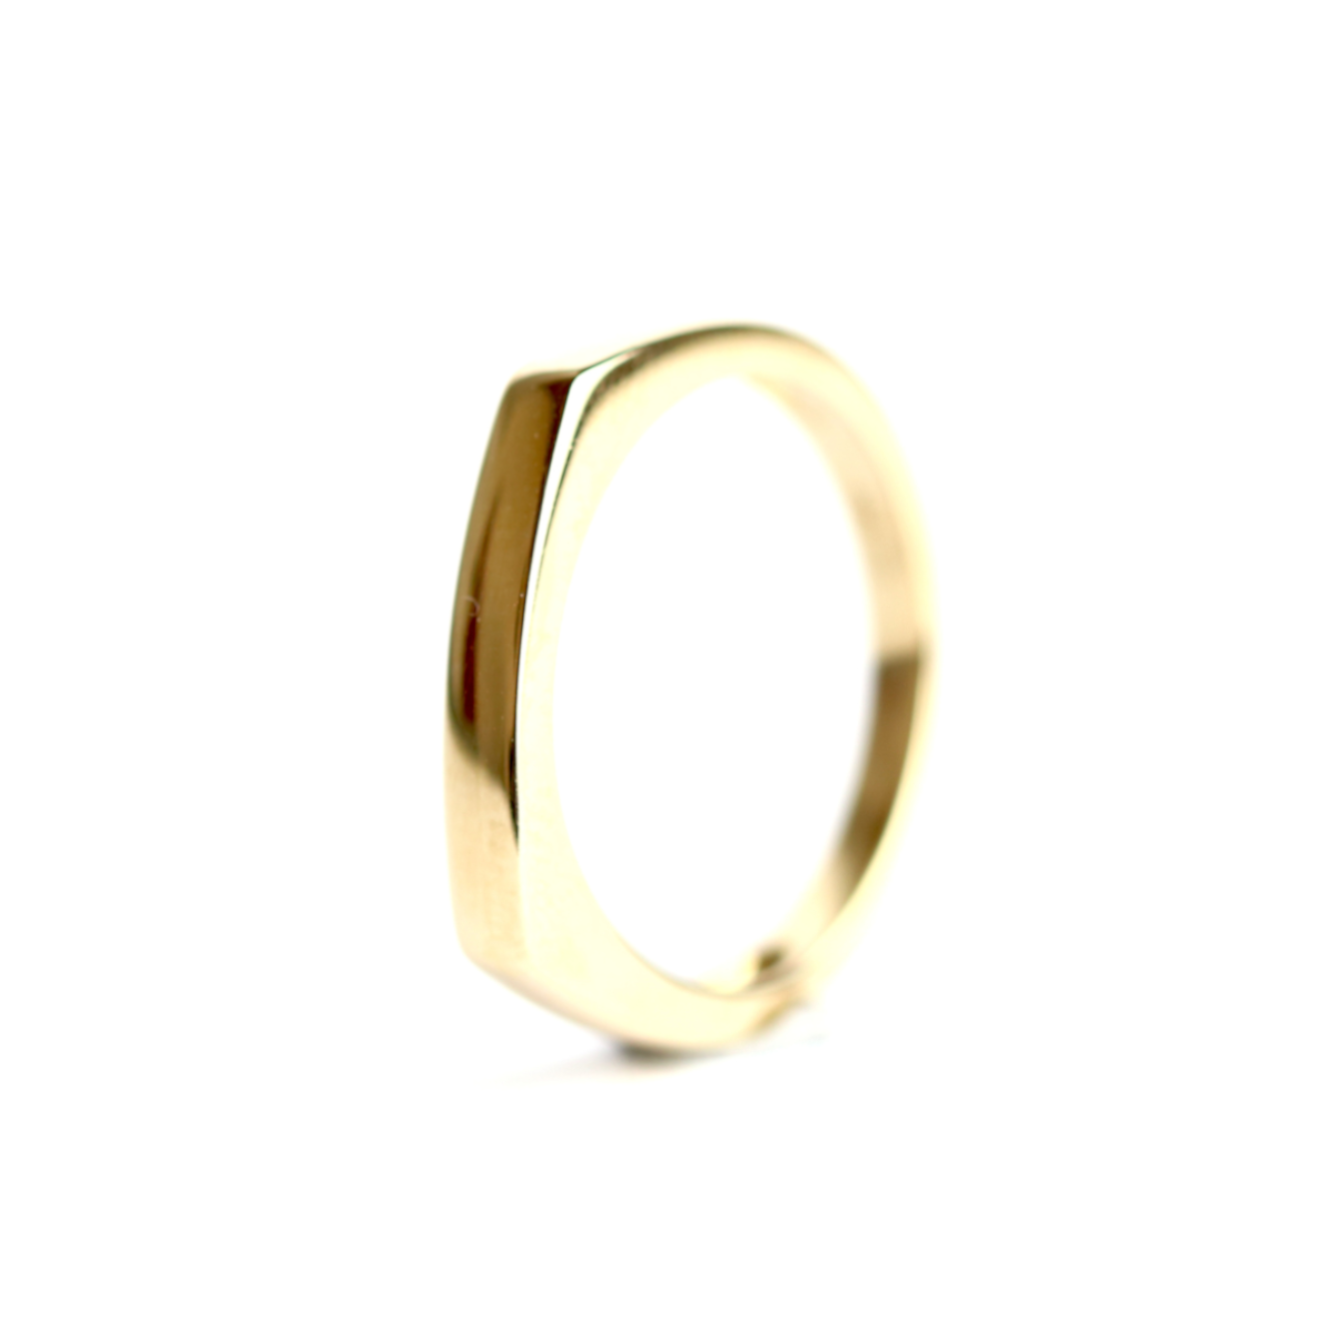 WILHELM MÜLLER - Ring in Gold zum gravieren geeignet